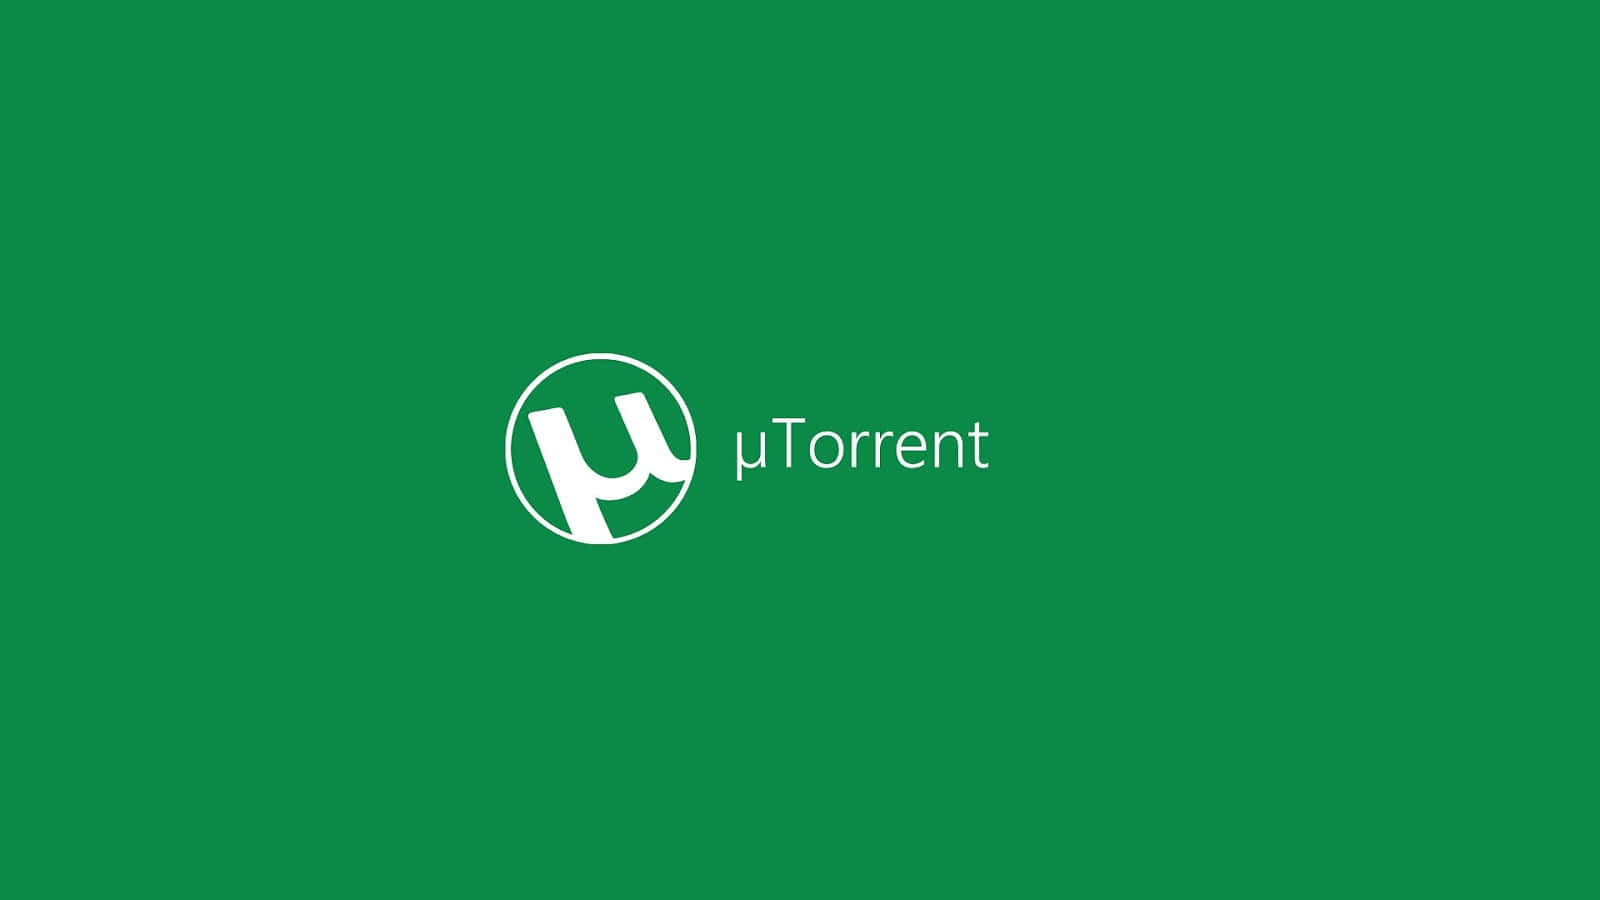 Logotipode Utorrent En Un Fondo Verde. Fondo de pantalla